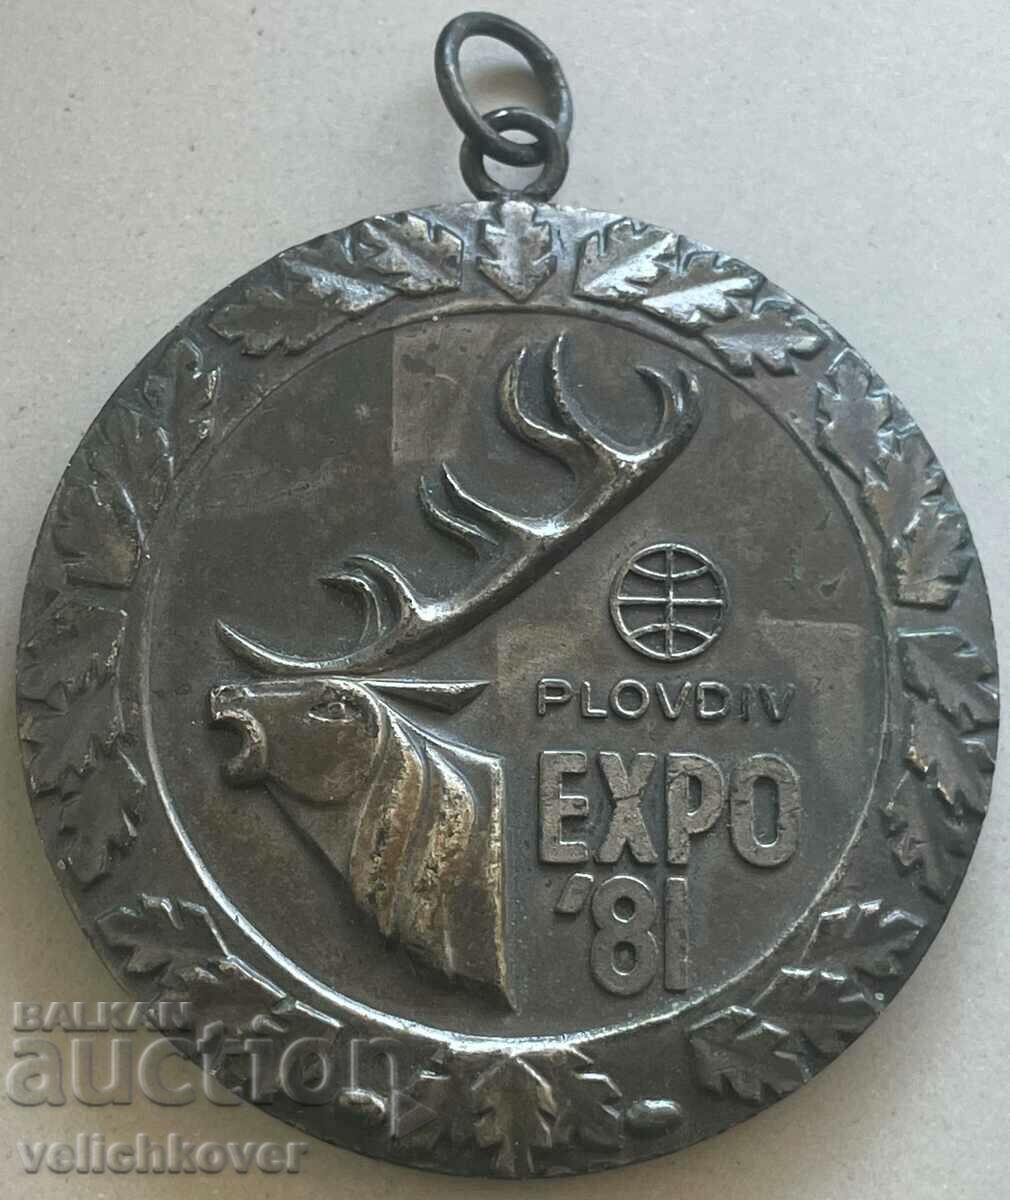 32916 Bulgaria Medalie de argint Expoziția Mondială de Vânătoare Plovdiv